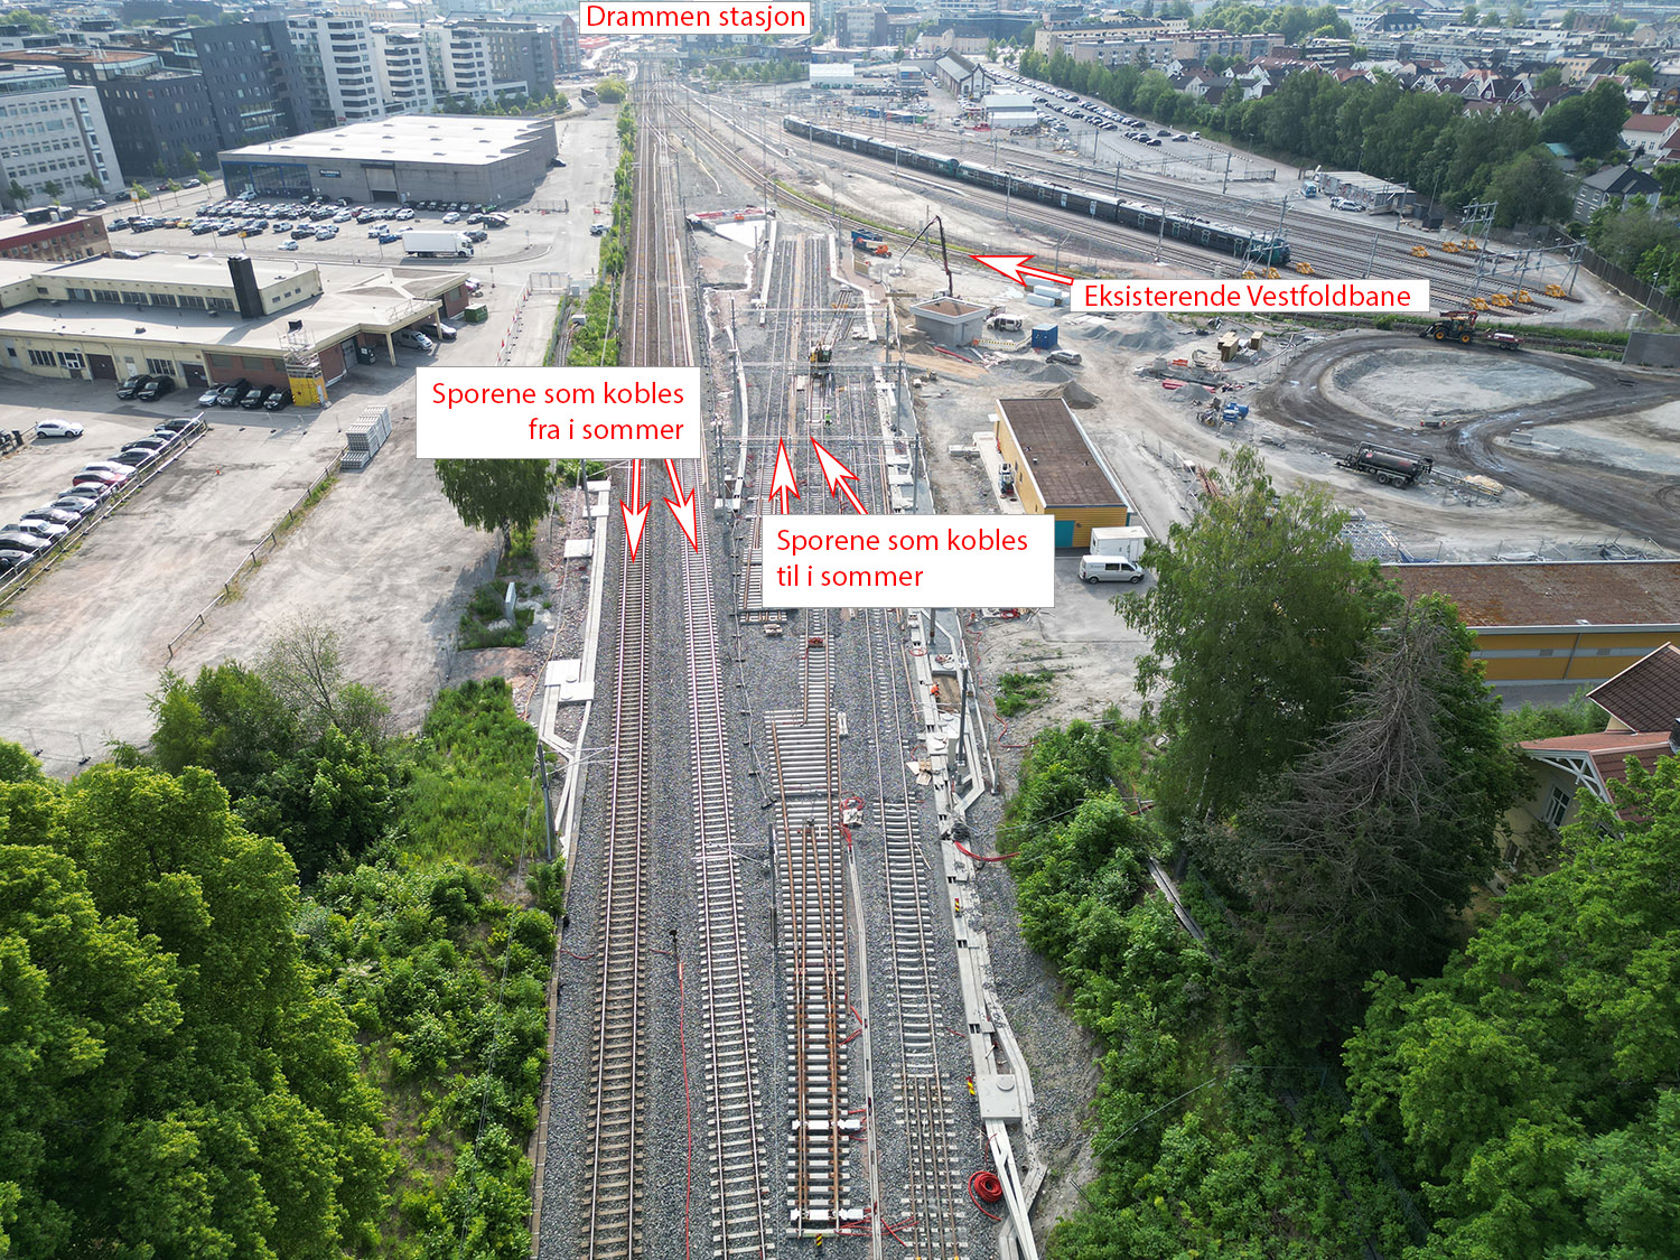 Dagens spor inn mot Drammen stasjon, og de nye sporene trafikken flyttes over på i sommer.